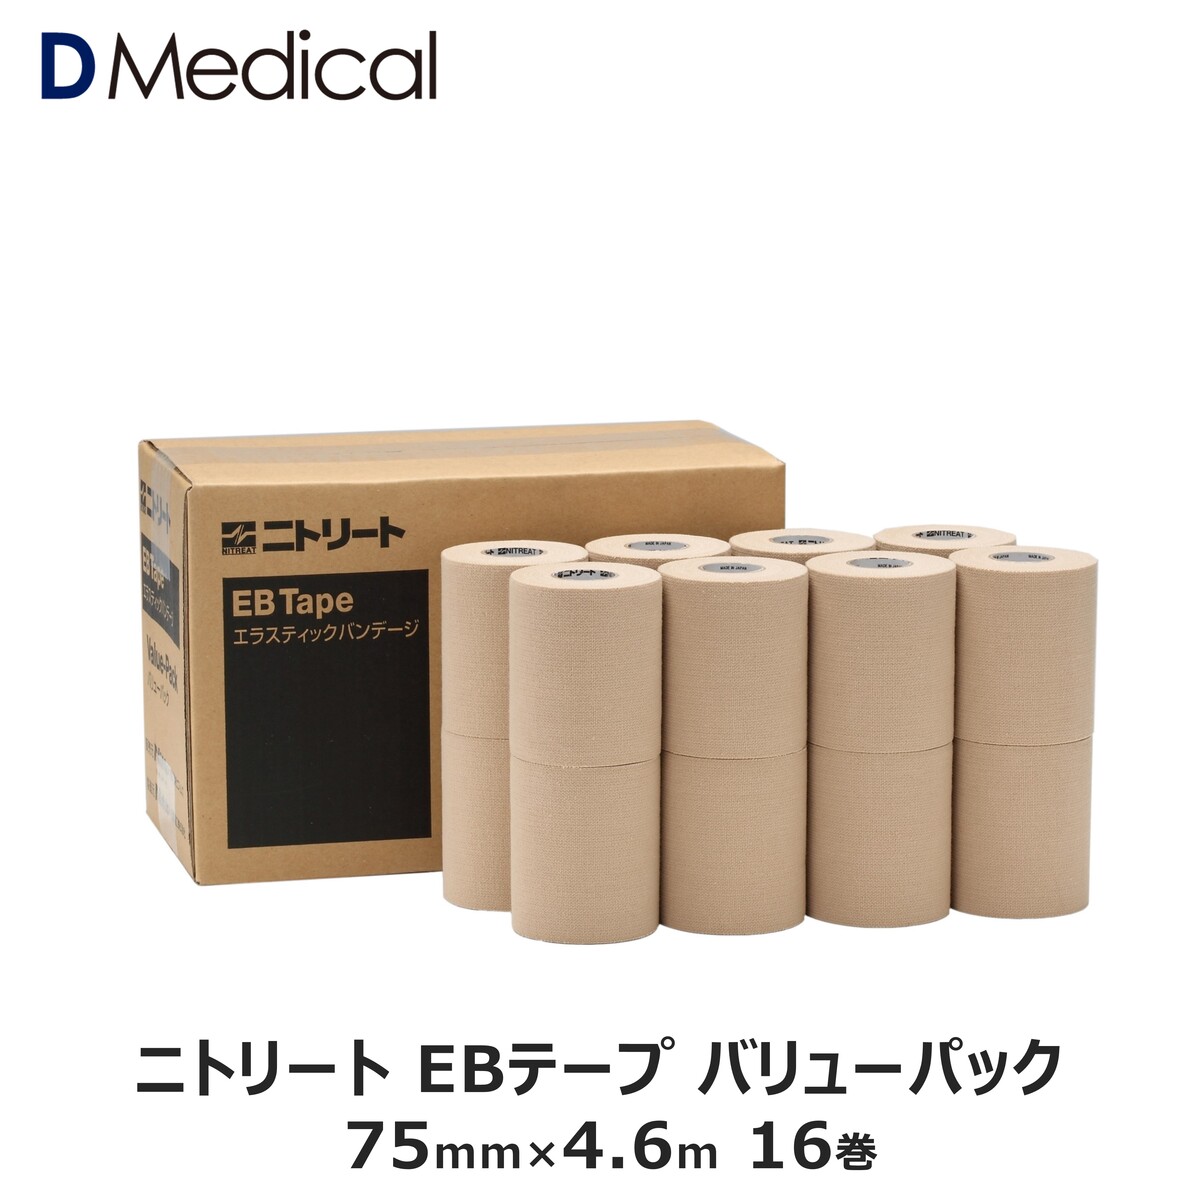 ニトリート EBテープ 75mm × 4.6m 16巻 バリューパック DMedical Dメディカル テーピング 固定用 伸縮テープ エラスティックテープ エラスチックテープ エラス ひじ 足首 7.5cm 送料無料